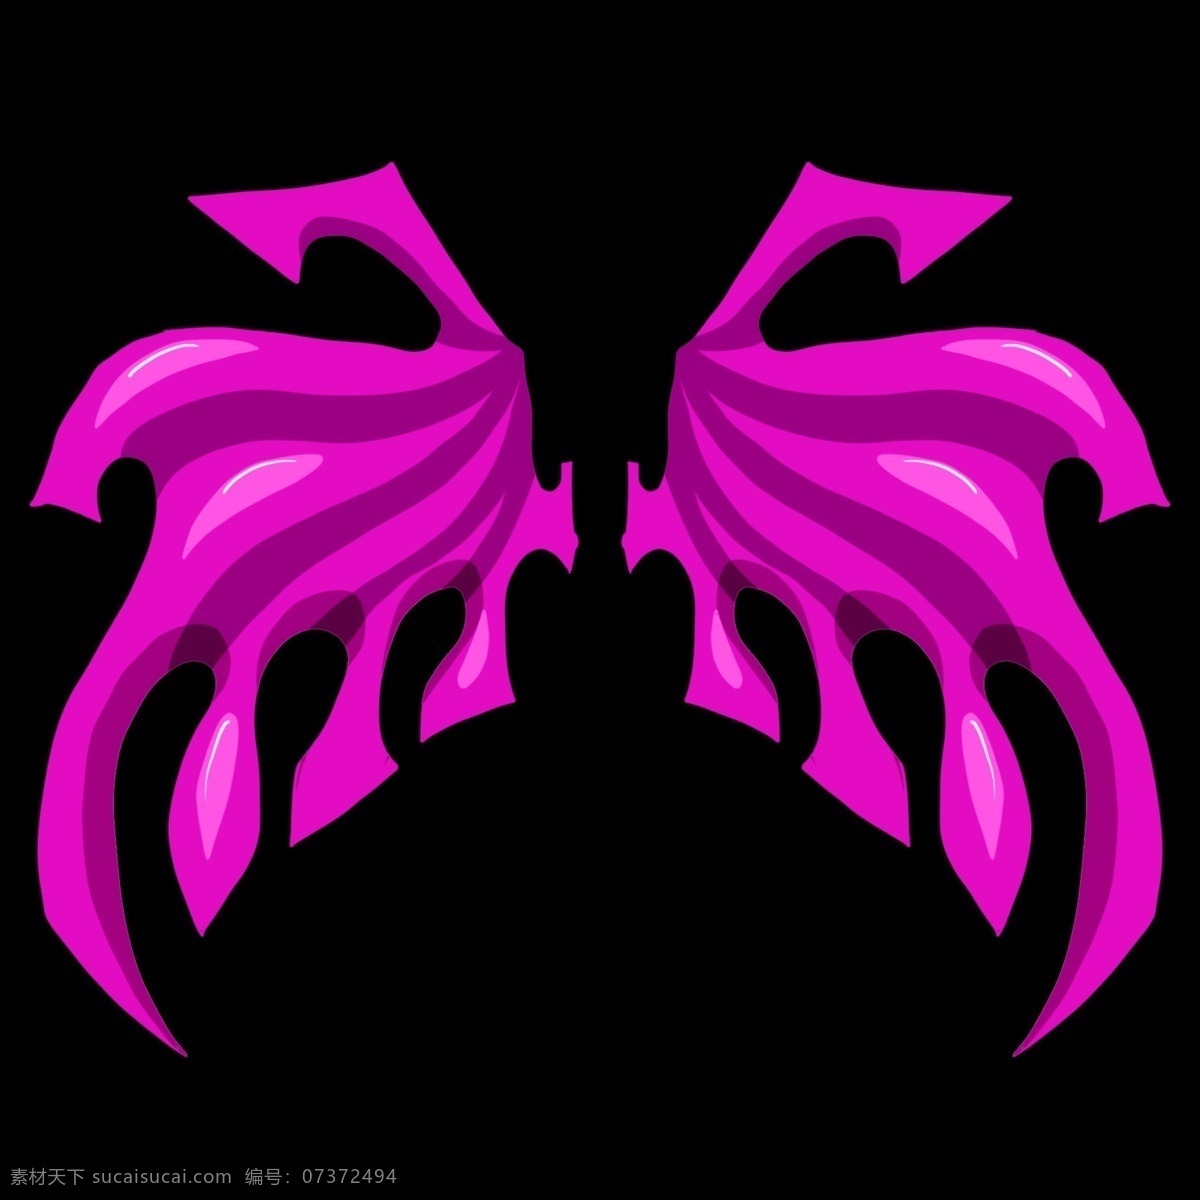 紫色 恶魔 翼 翅膀 插画 手绘 邪恶 邪恶的翅膀 卡通插画 羽毛 羽翼 展翅 天使恶魔插画